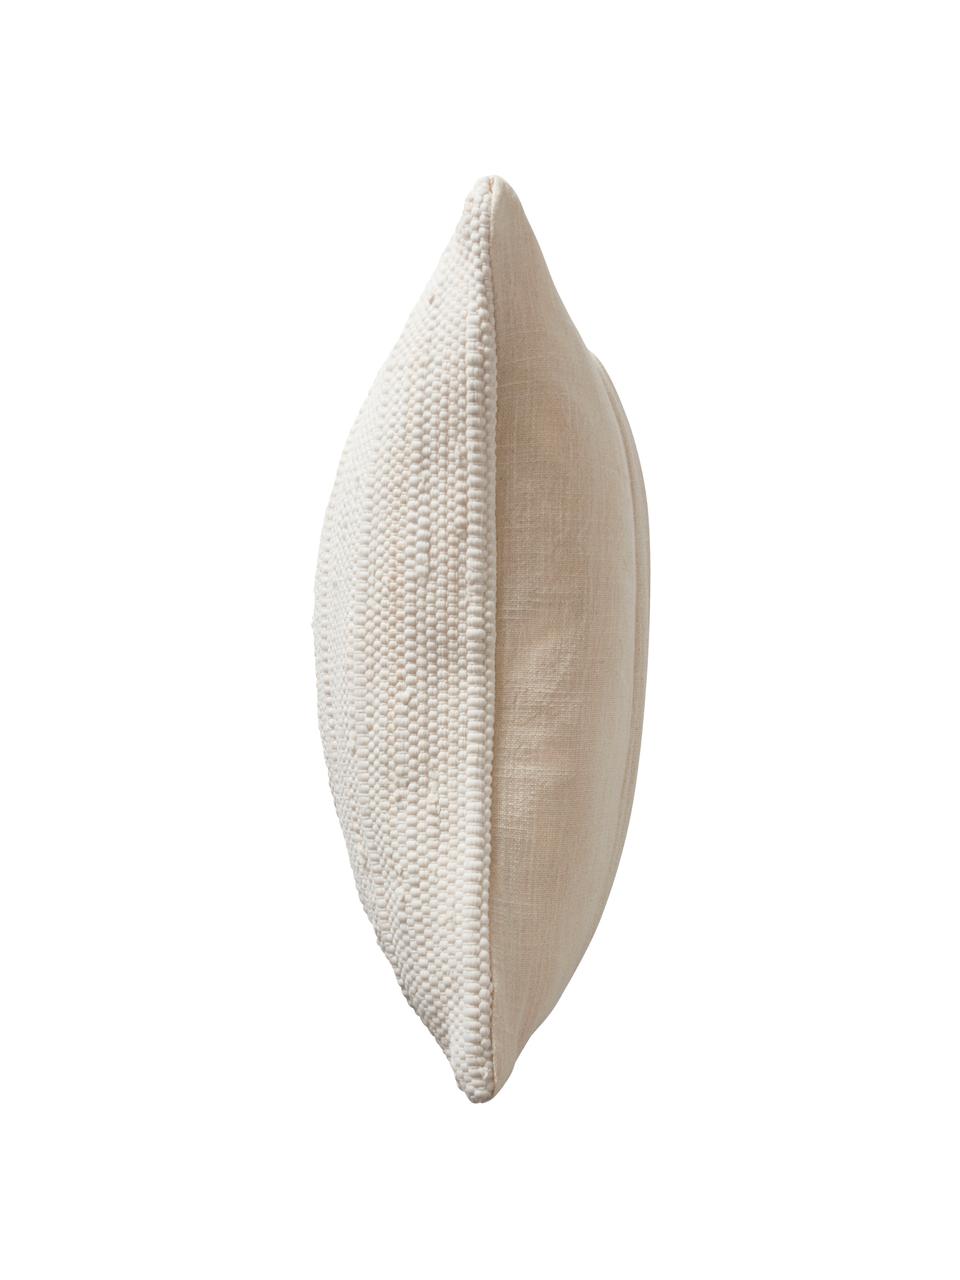 Kussenhoes Elvira met gestructureerde oppervlak, 90% gerecycled katoen, 10% katoen, Beige, B 50 x L 50 cm